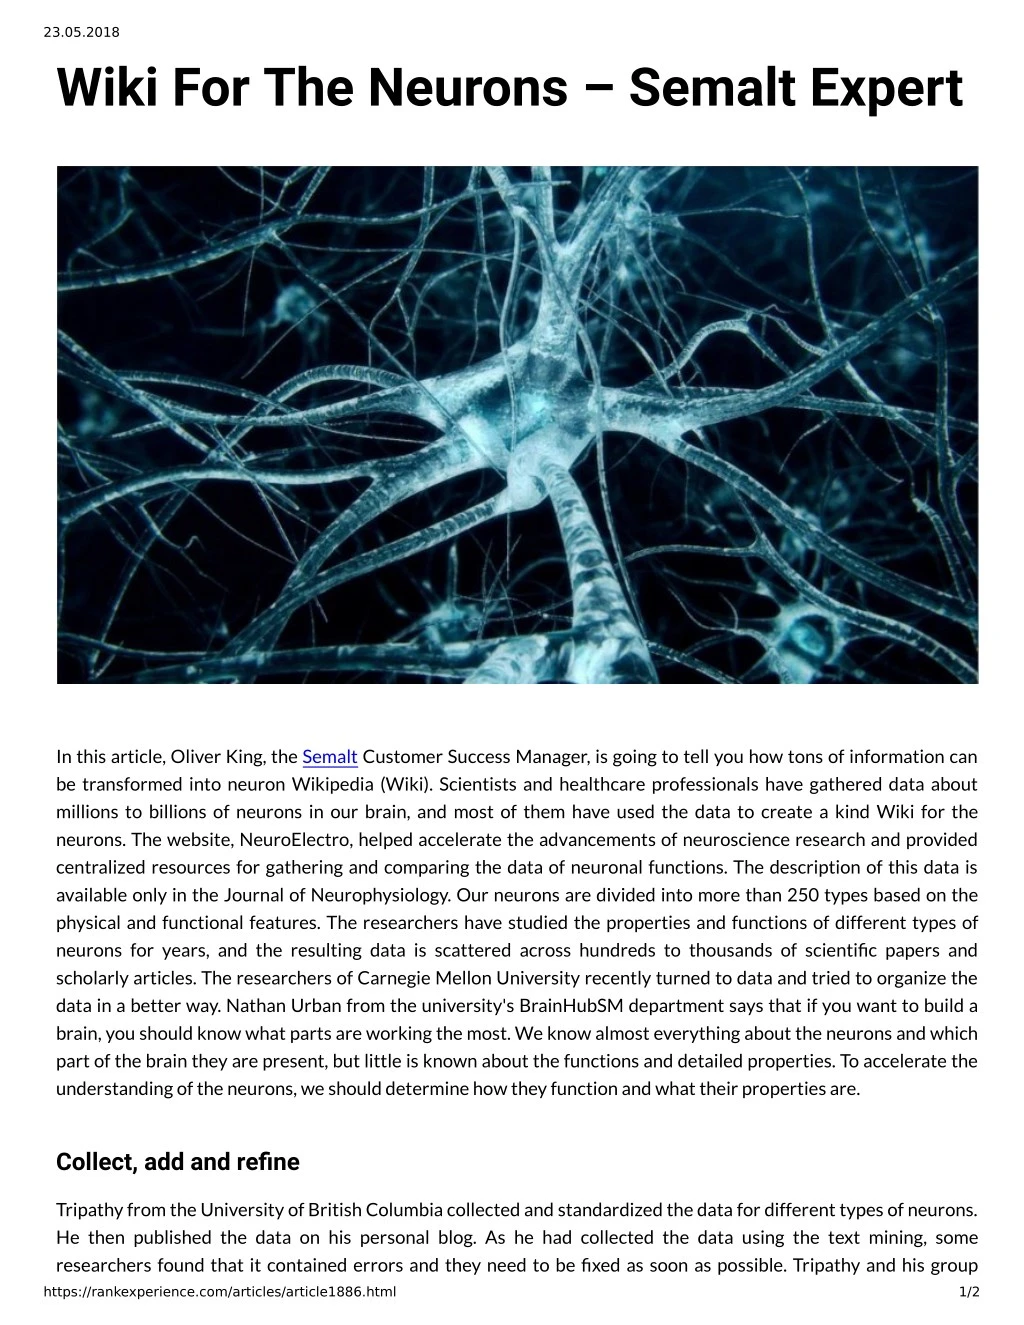 23 05 2018 wiki for the neurons semalt expert